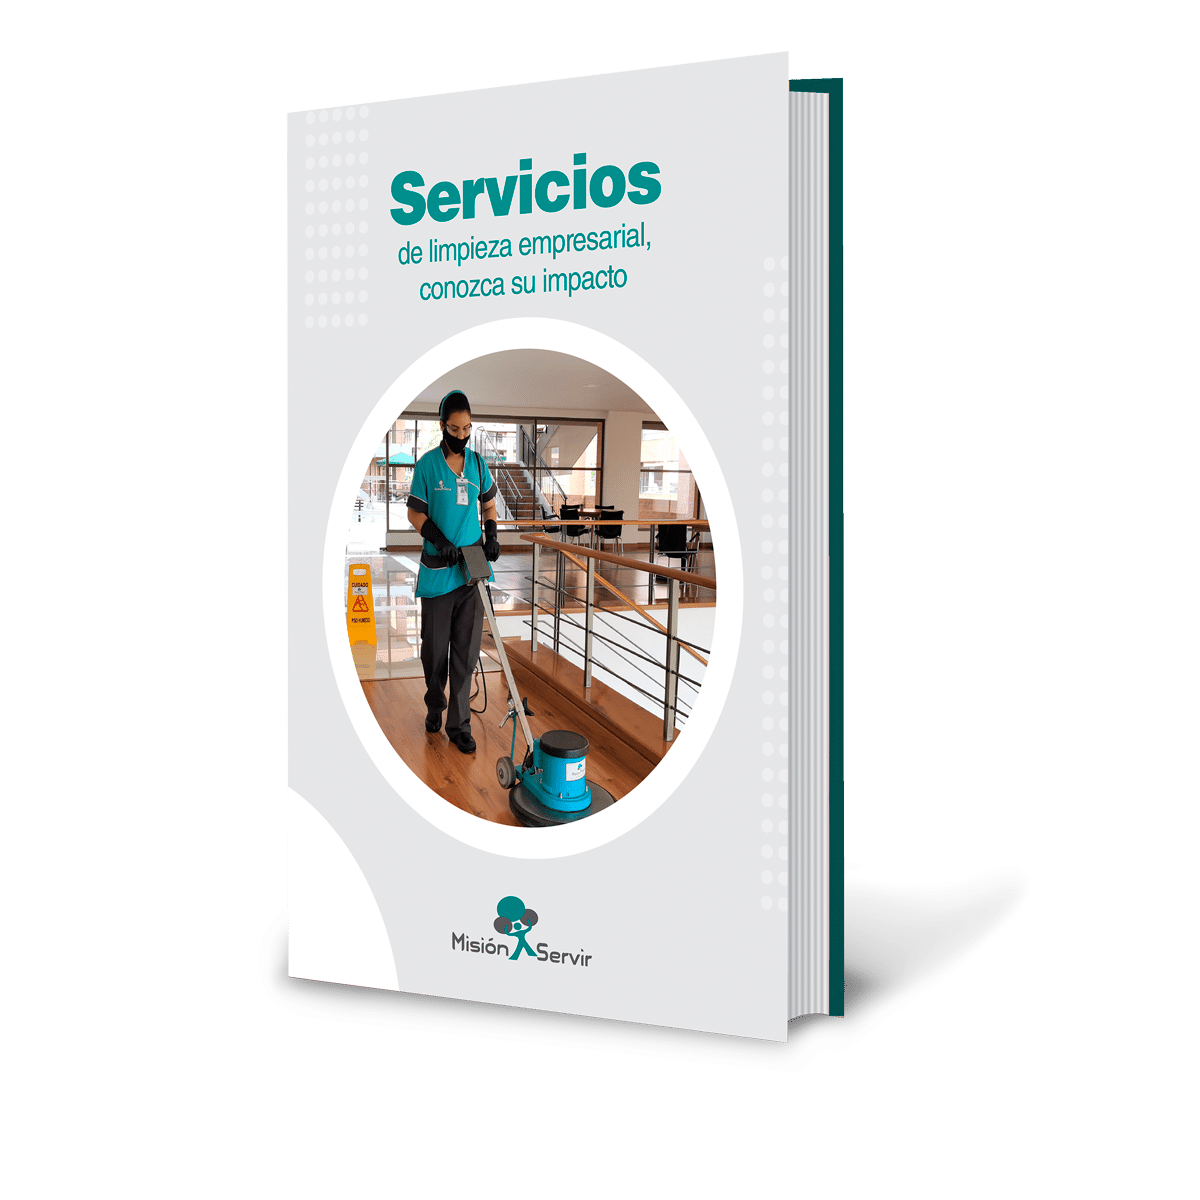 Descarga GRATIS el ebook: Servicios de limpieza empresarial, conozca su impacto - Misión Servir